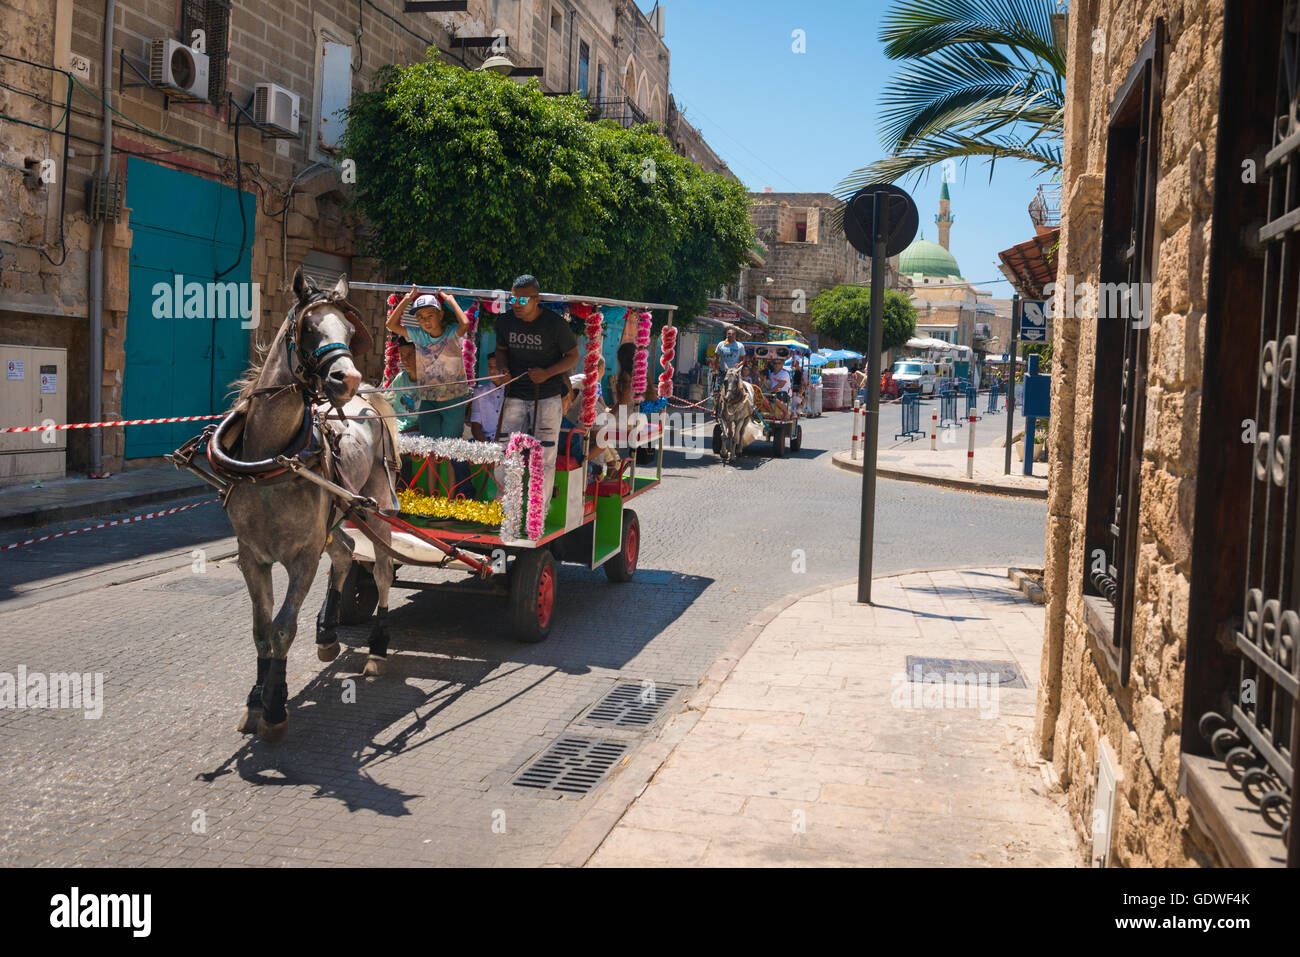 Israël akko acre vieille ville ville panier cheval transport bus Banque D'Images